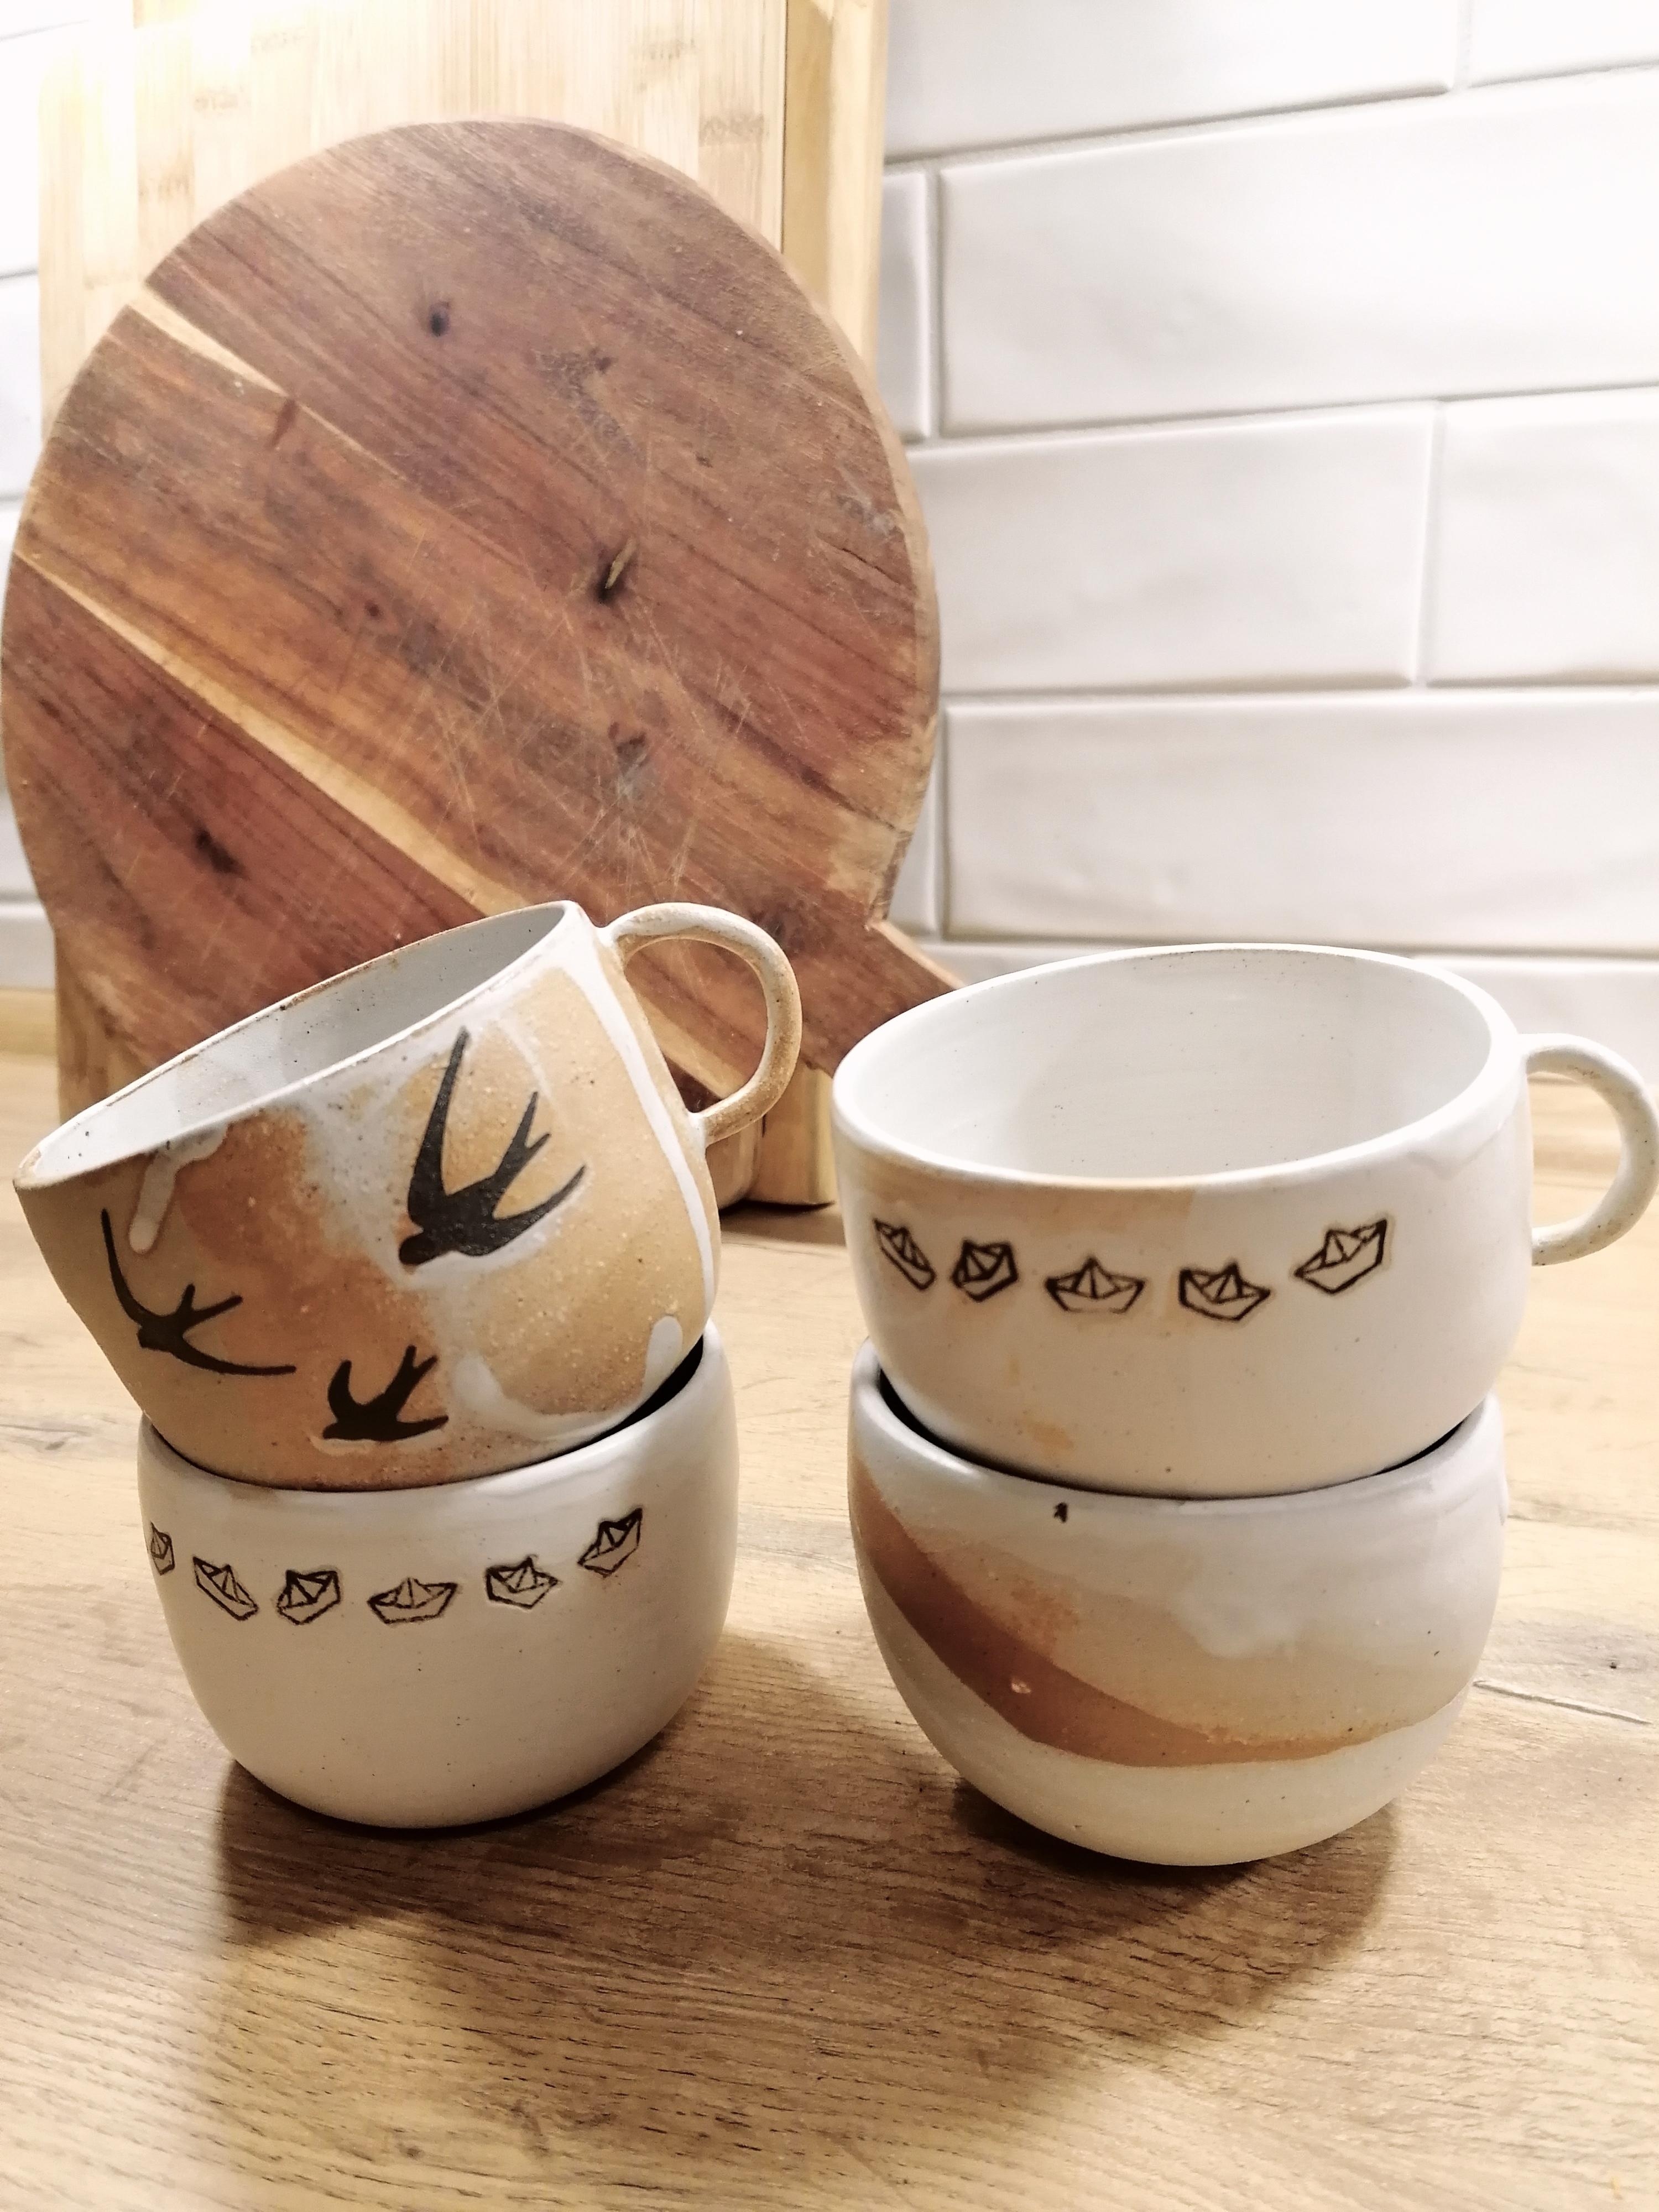 Ich bin verliebt in diese wunderschönen Einzelstücke von #kadia.keramik bei Instagram #Einzelsücke #Handgemacht #Tassen